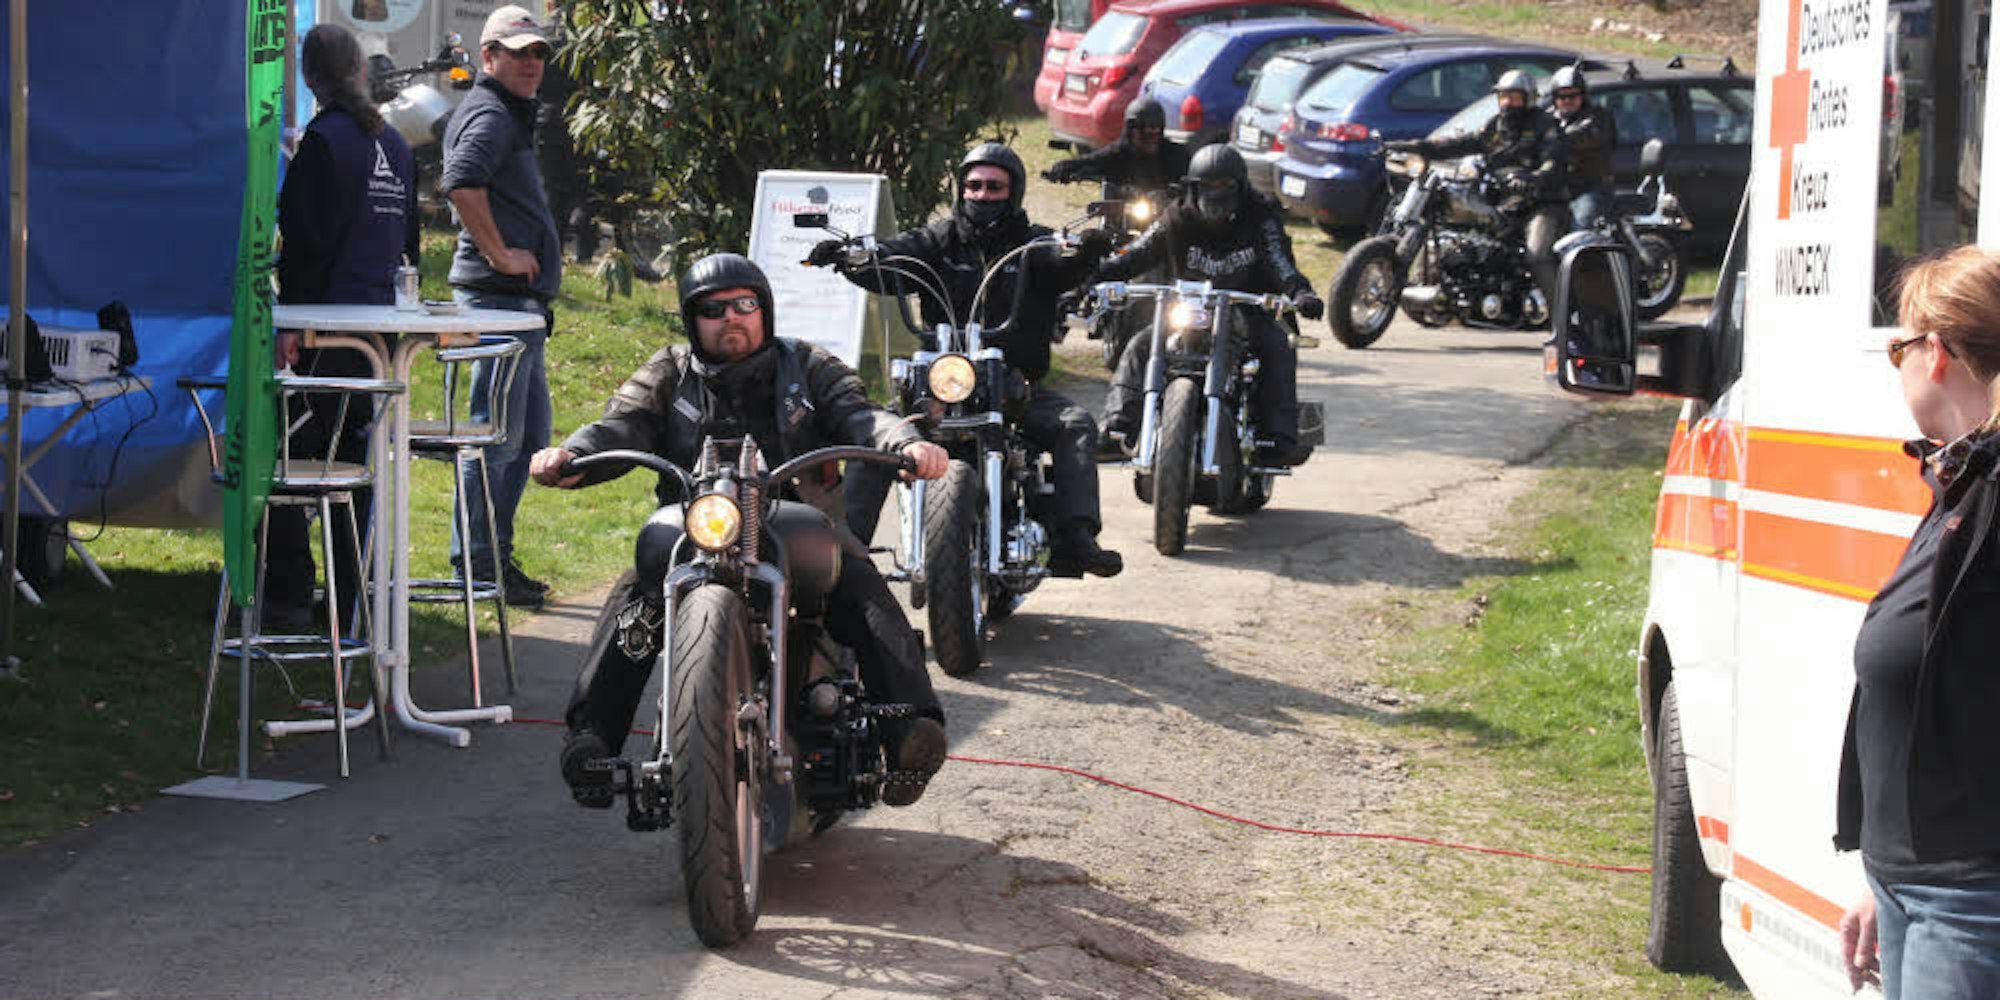 Einen lautstarken Auftritt legte die Harley Davidson-Truppe aus Sankt Augustin beim Auftakt zur Motorradsaison der Polizei an „Biker’s Rast“ hin.